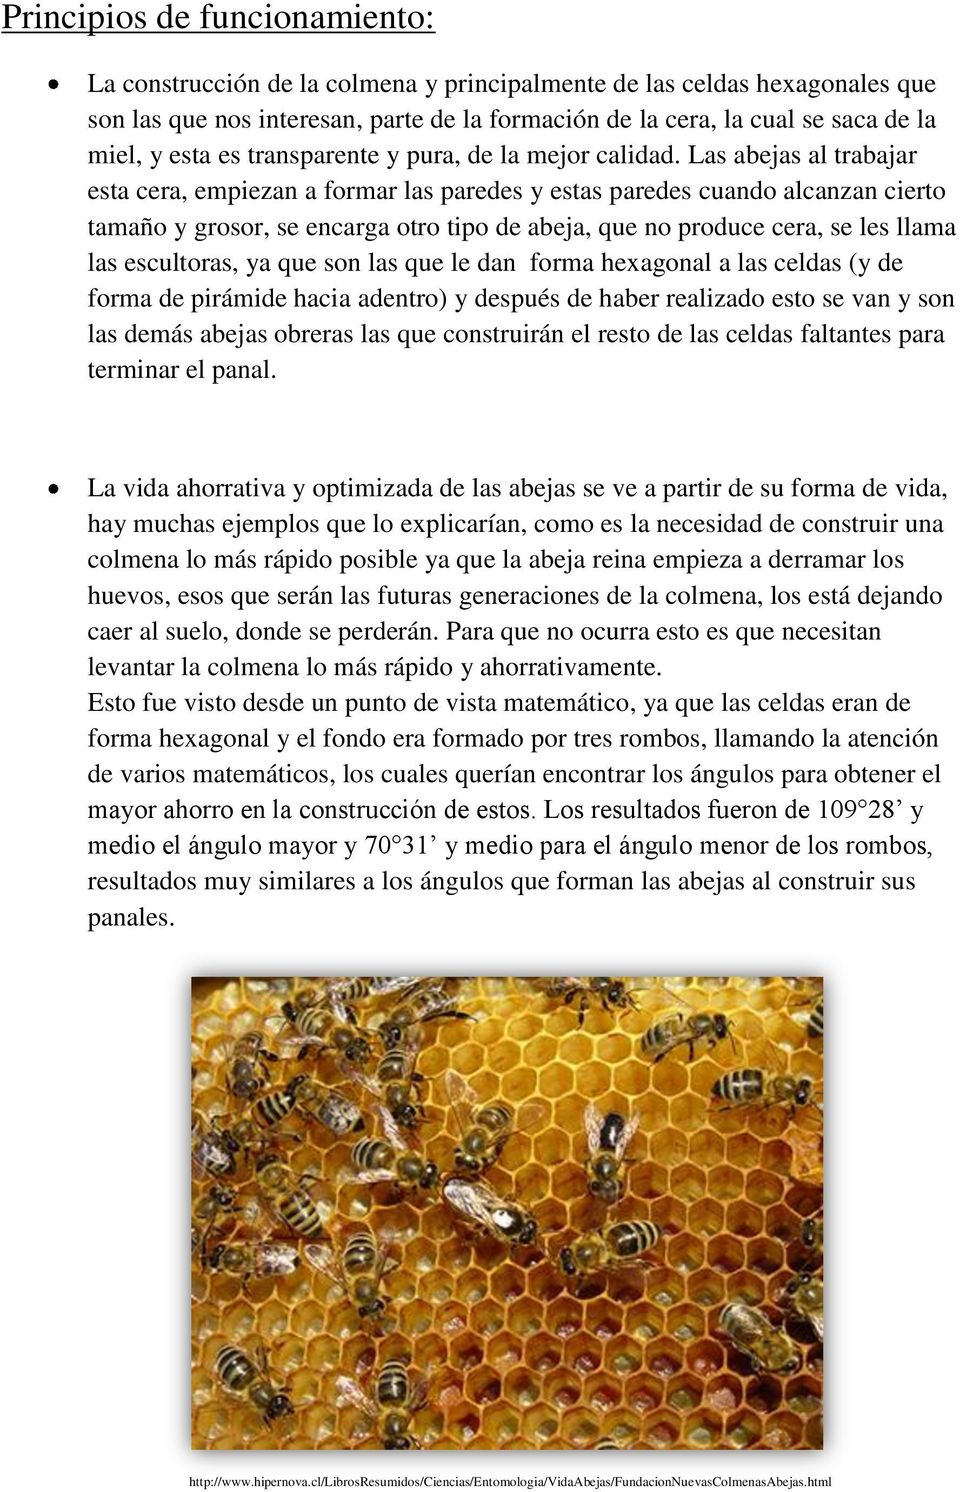 Las abejas al trabajar esta cera, empiezan a formar las paredes y estas paredes cuando alcanzan cierto tamaño y grosor, se encarga otro tipo de abeja, que no produce cera, se les llama las